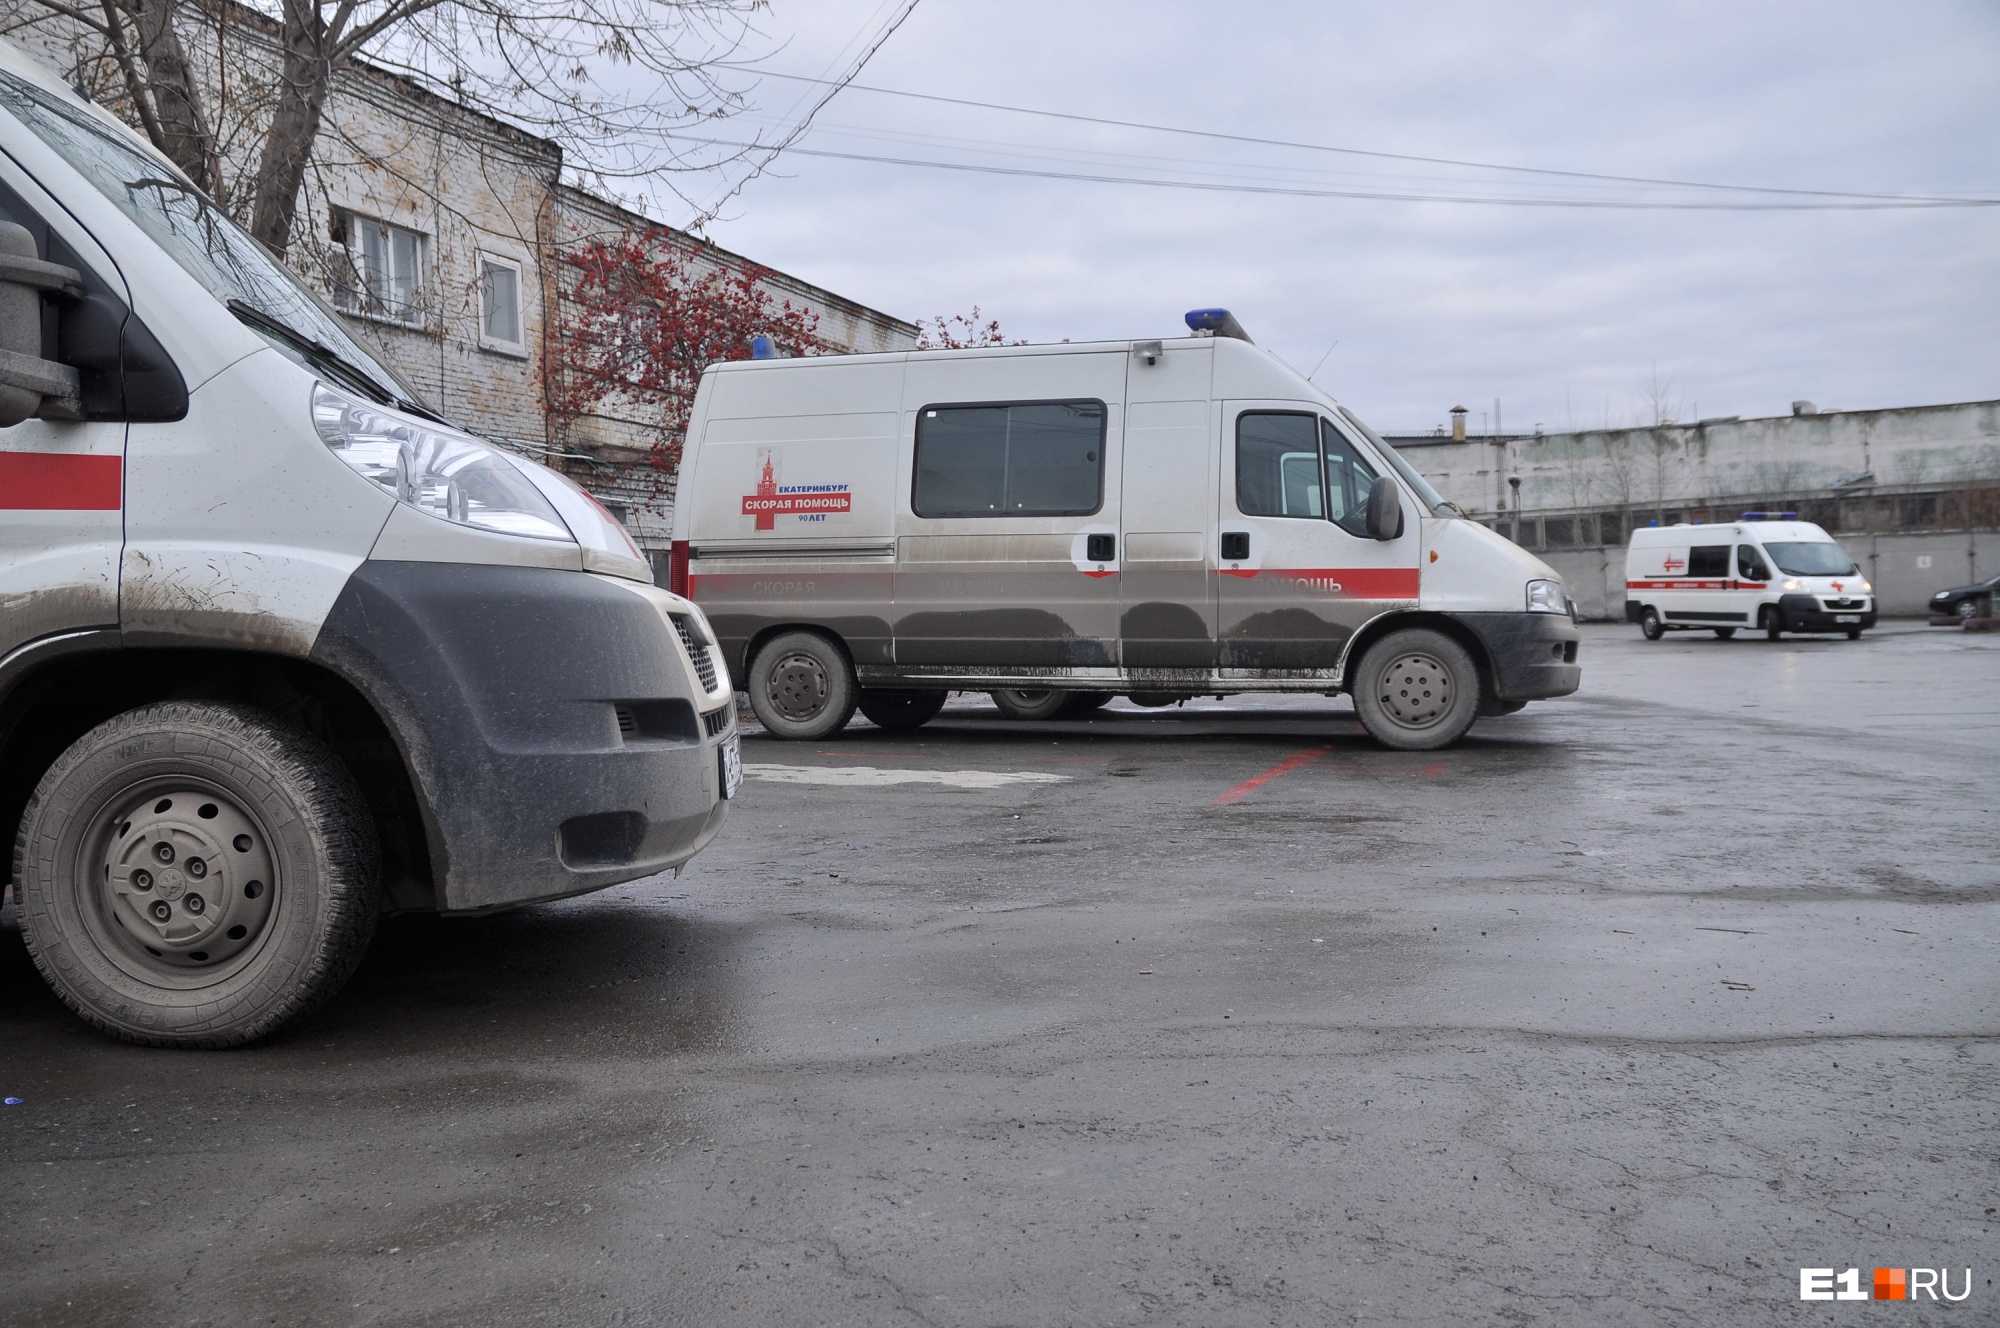 Правда ли, что работу скорой помощи в Екатеринбурге остановят? Отвечает вице-губернатор